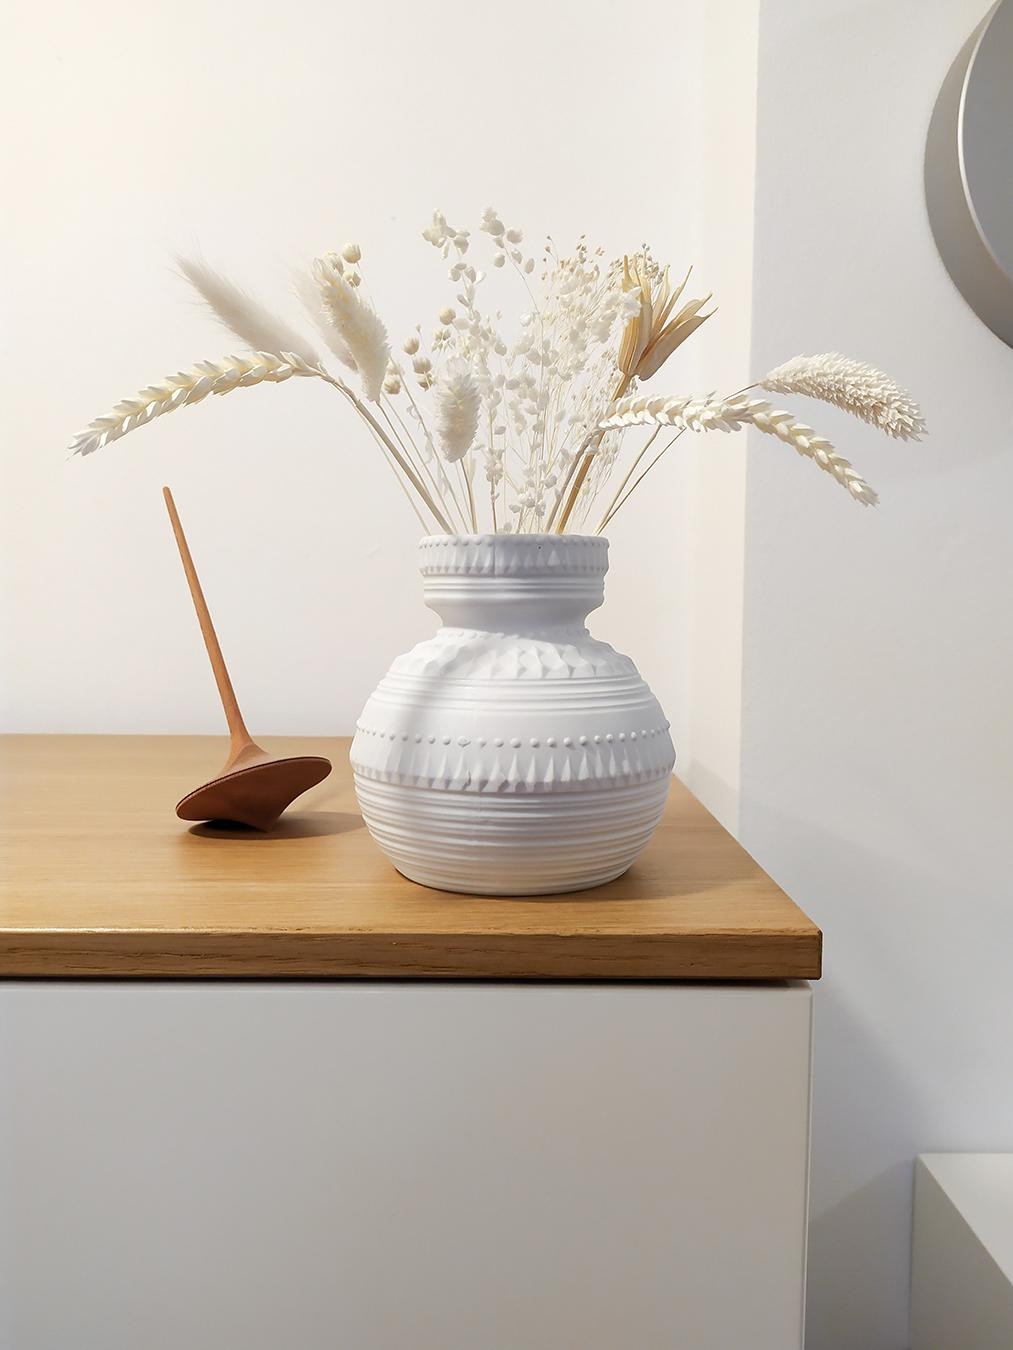 Wundervolle Vase aus dem Shop von https://etsy.me/3iPOBR2
Schaut mal vorbei! <3
#vintage #vase #trockenblumen #weiß